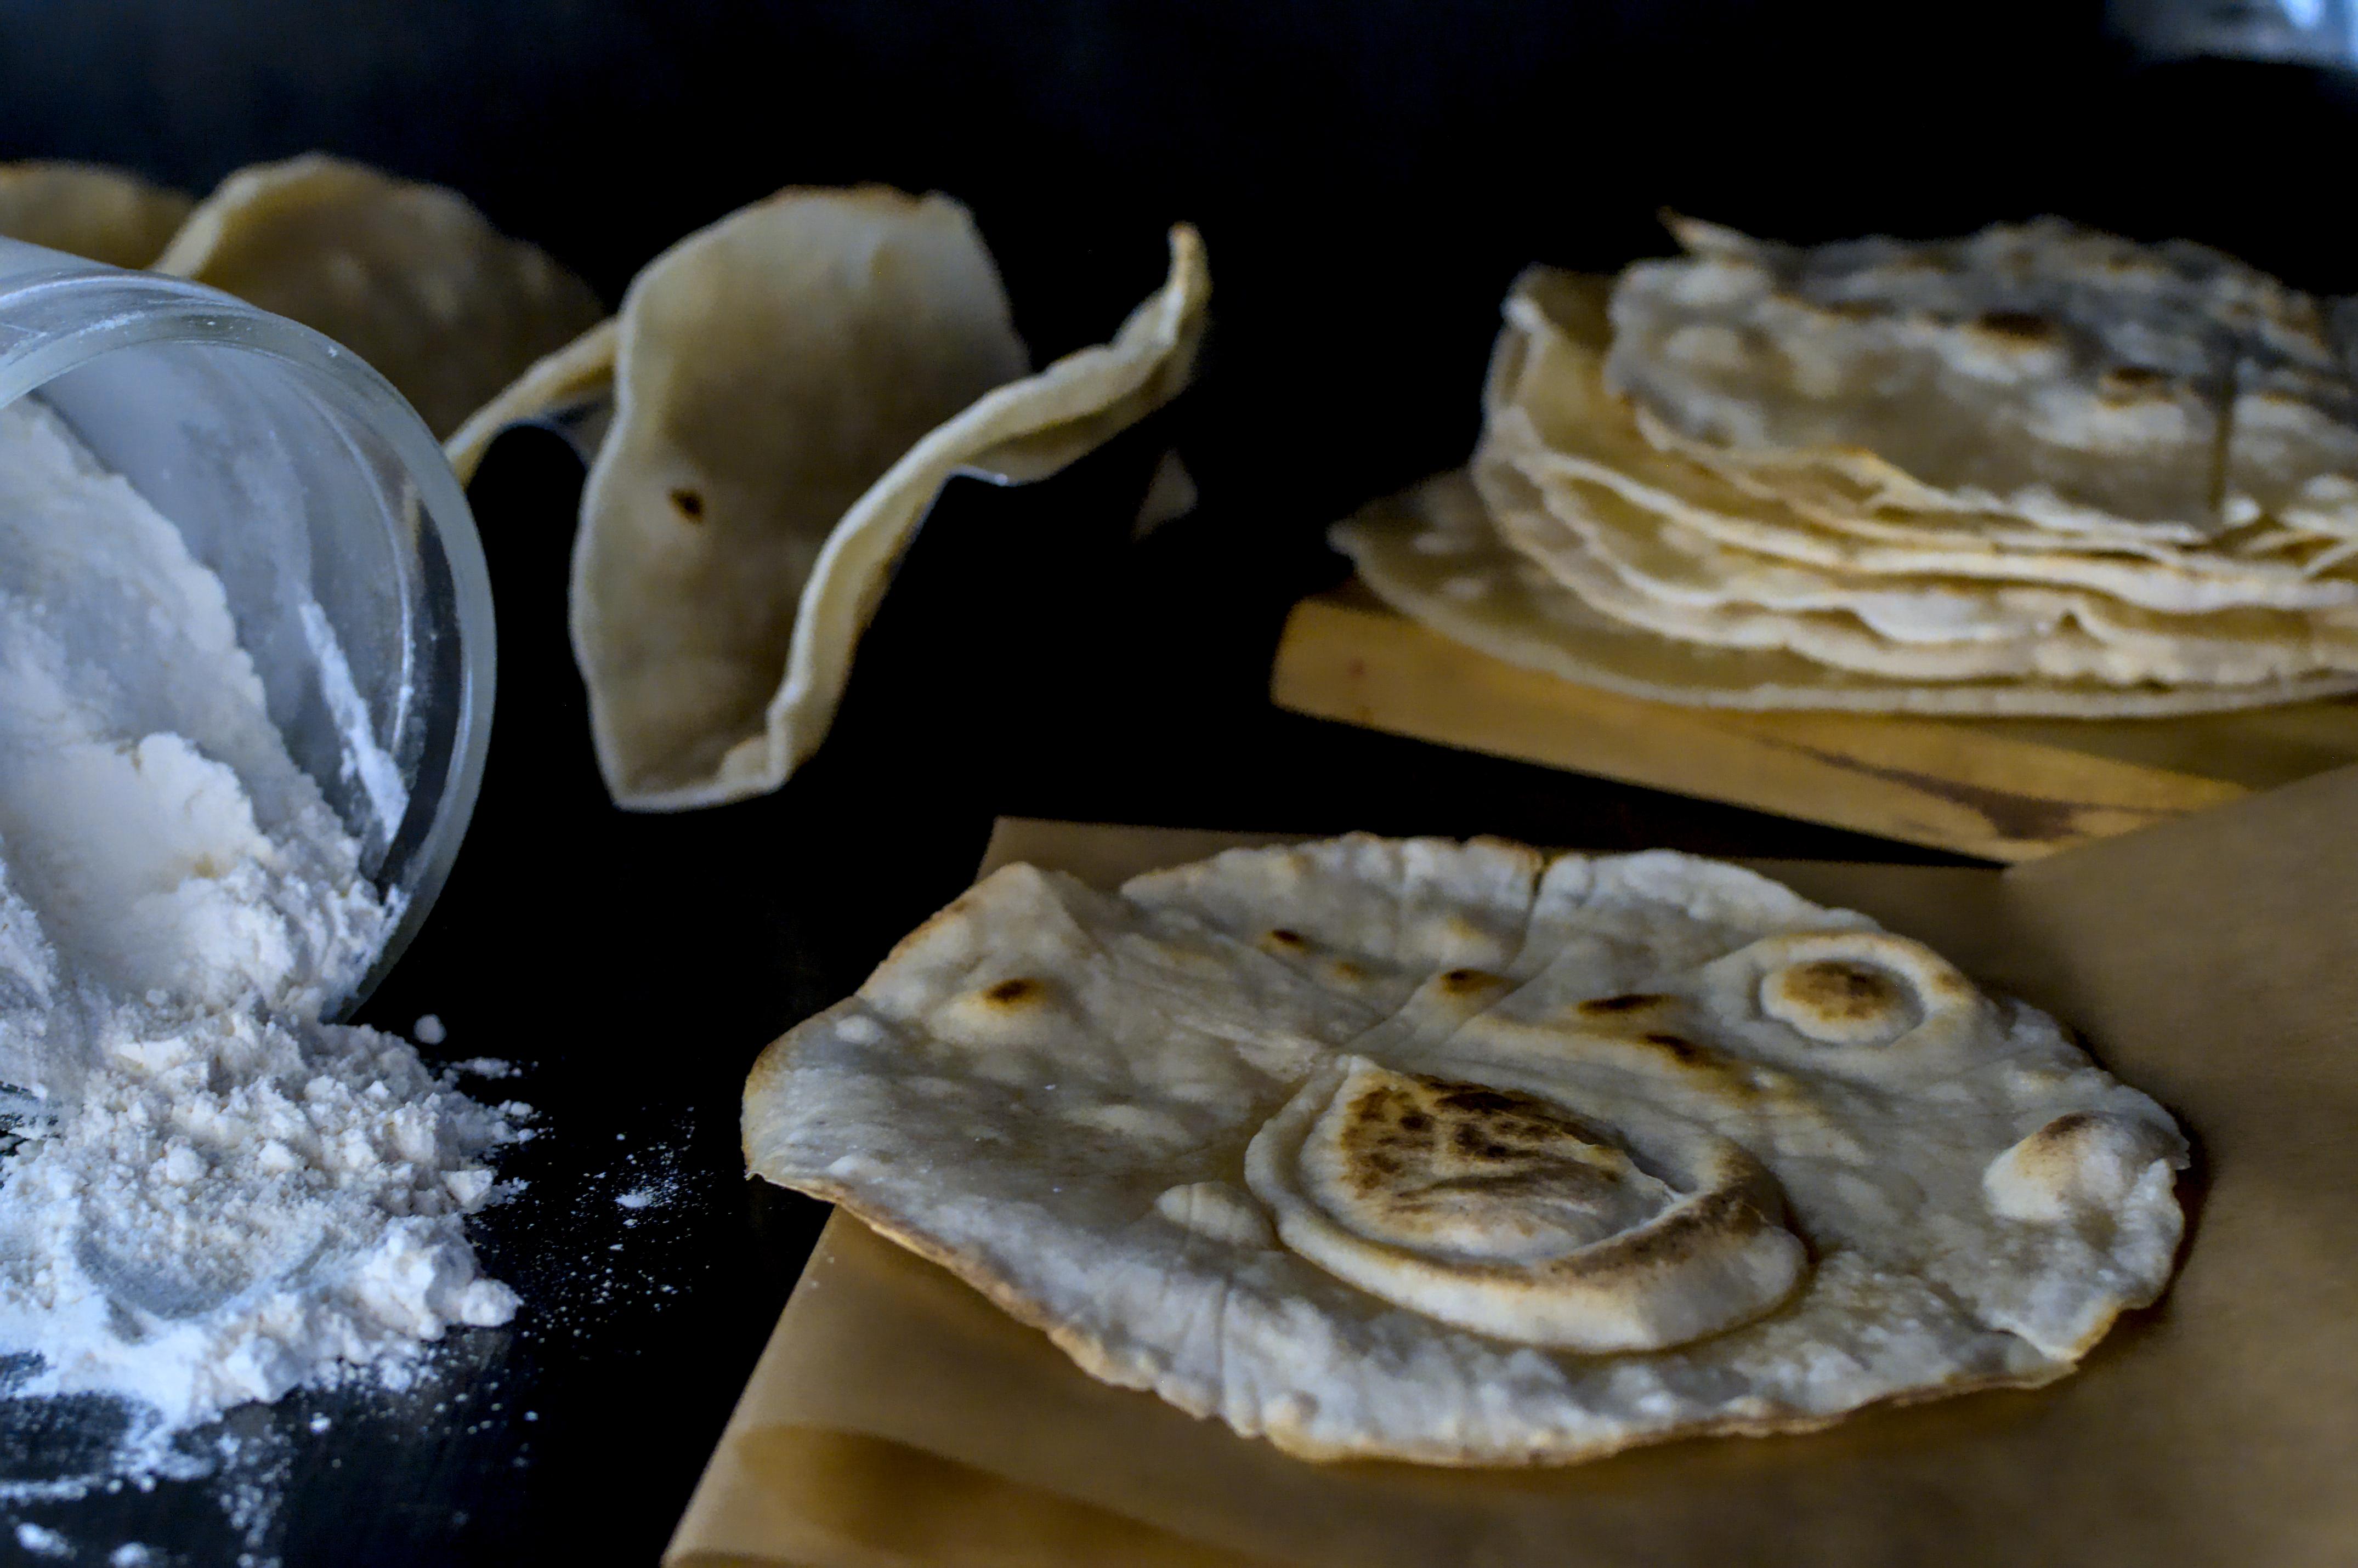 Rezept: Glutenfreie Tortillas aus Maniokmehl 0 (0)